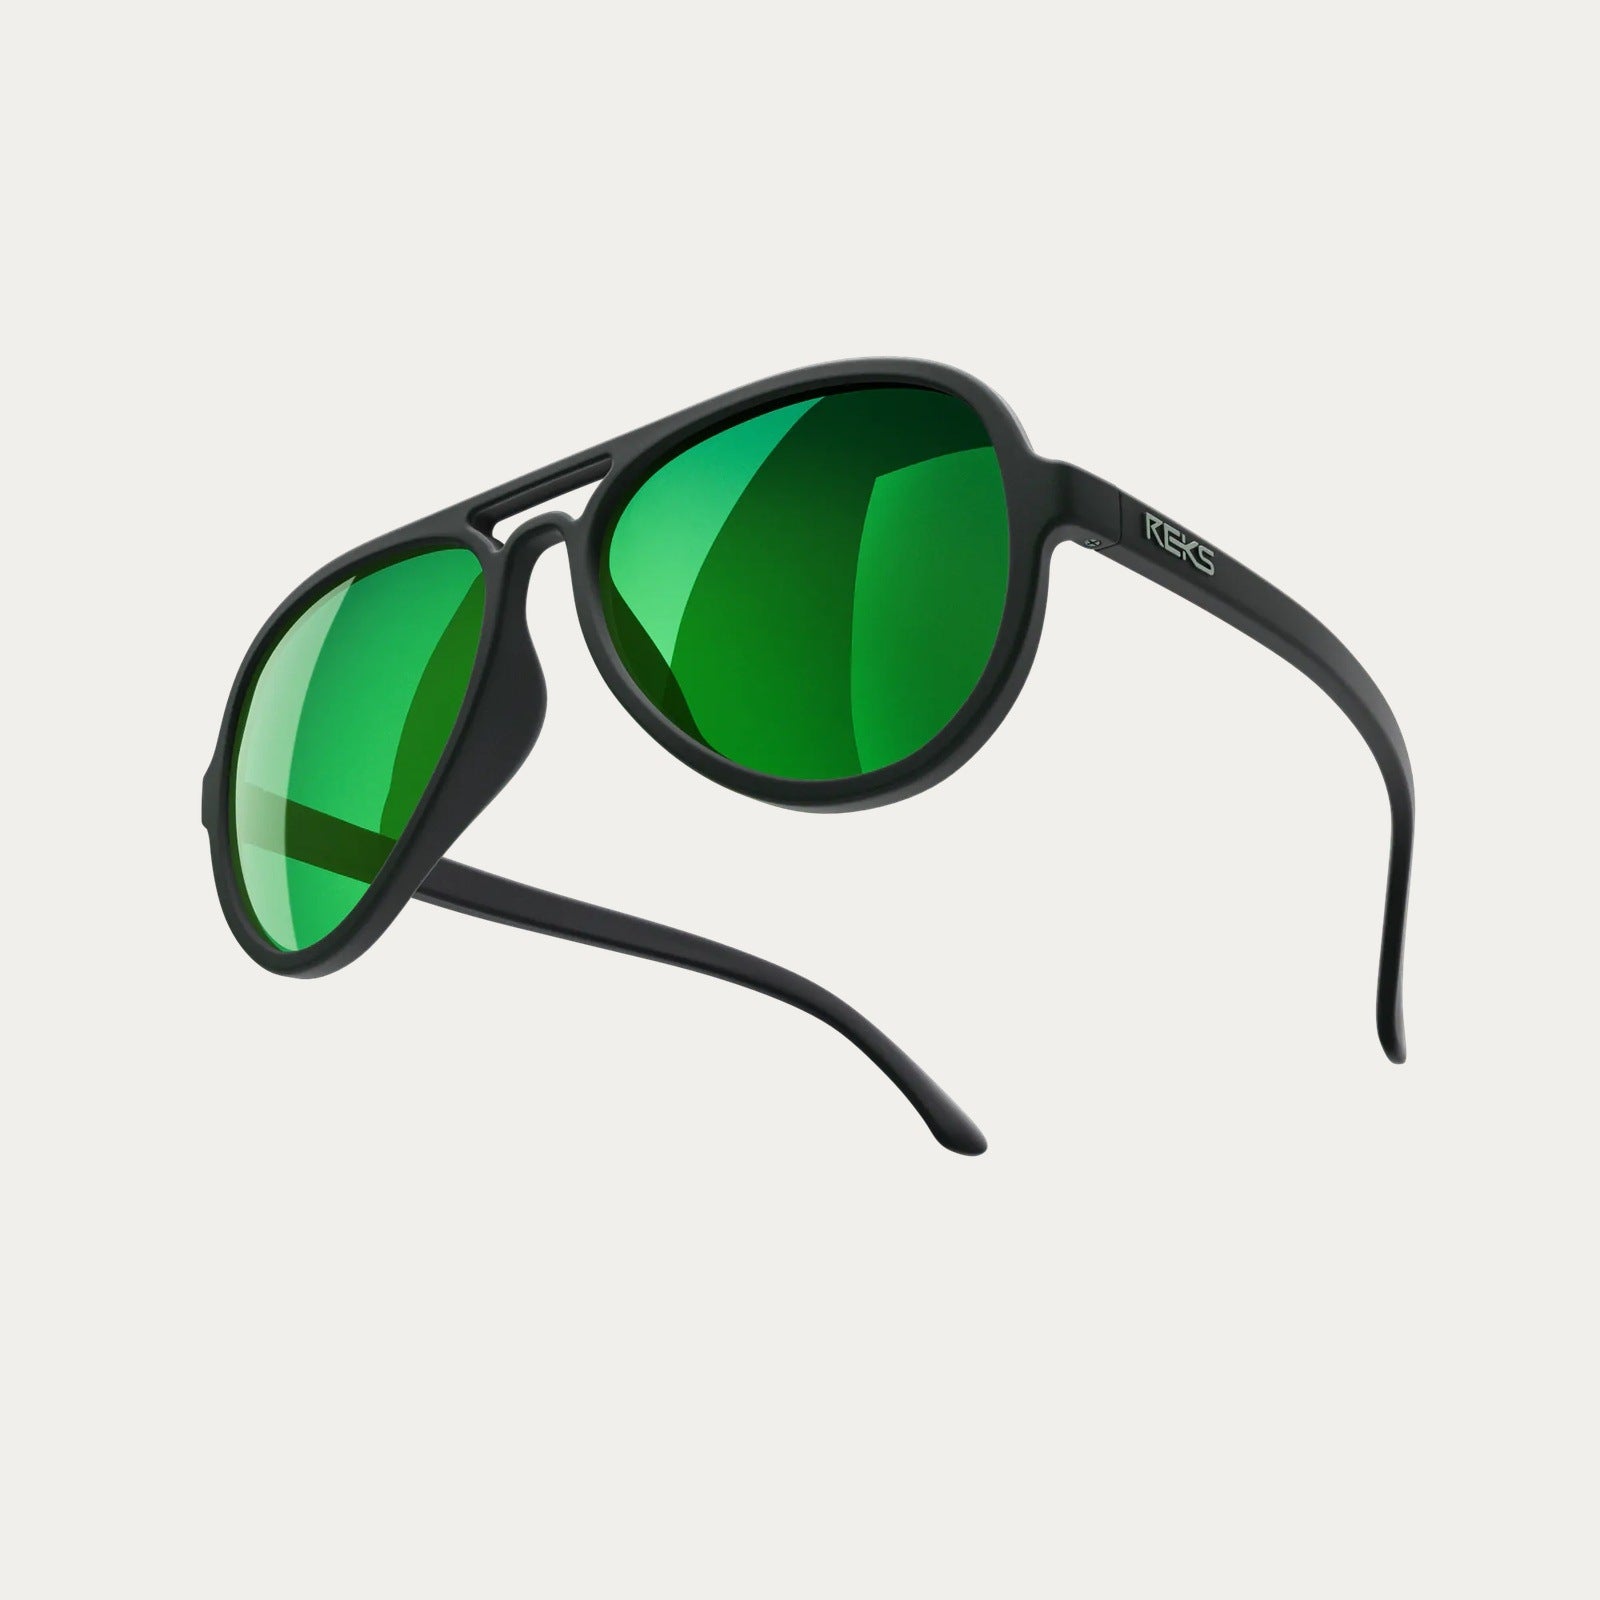 Reks | Aviator Prescription Polycarbonate Sunglasses Solid Green Green Mirror